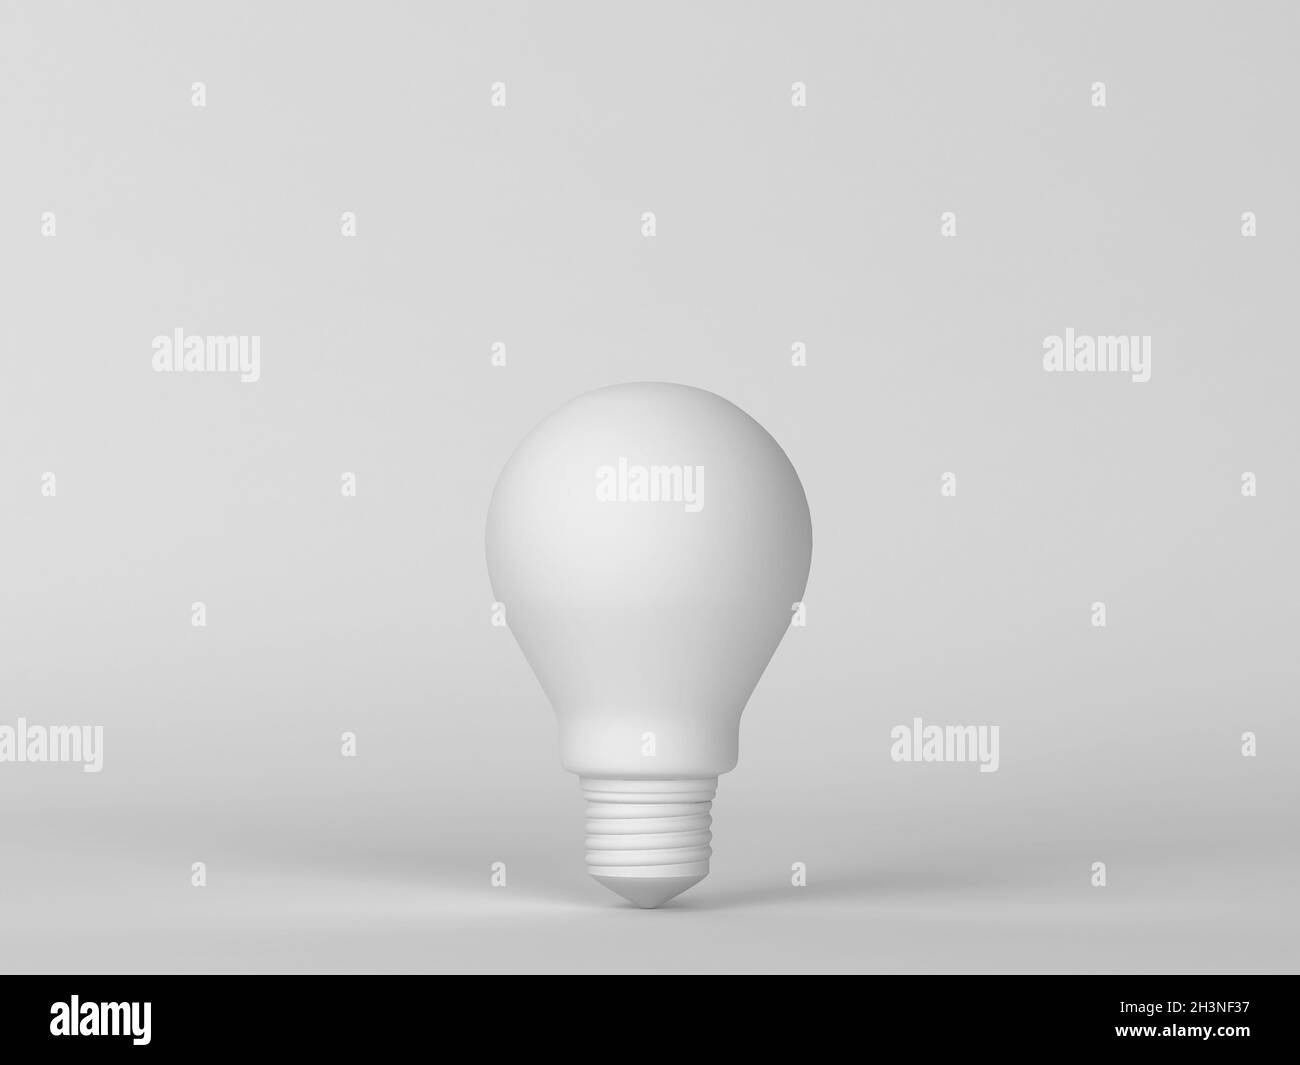 Ampoule.Scène minimale.illustration 3d Banque D'Images